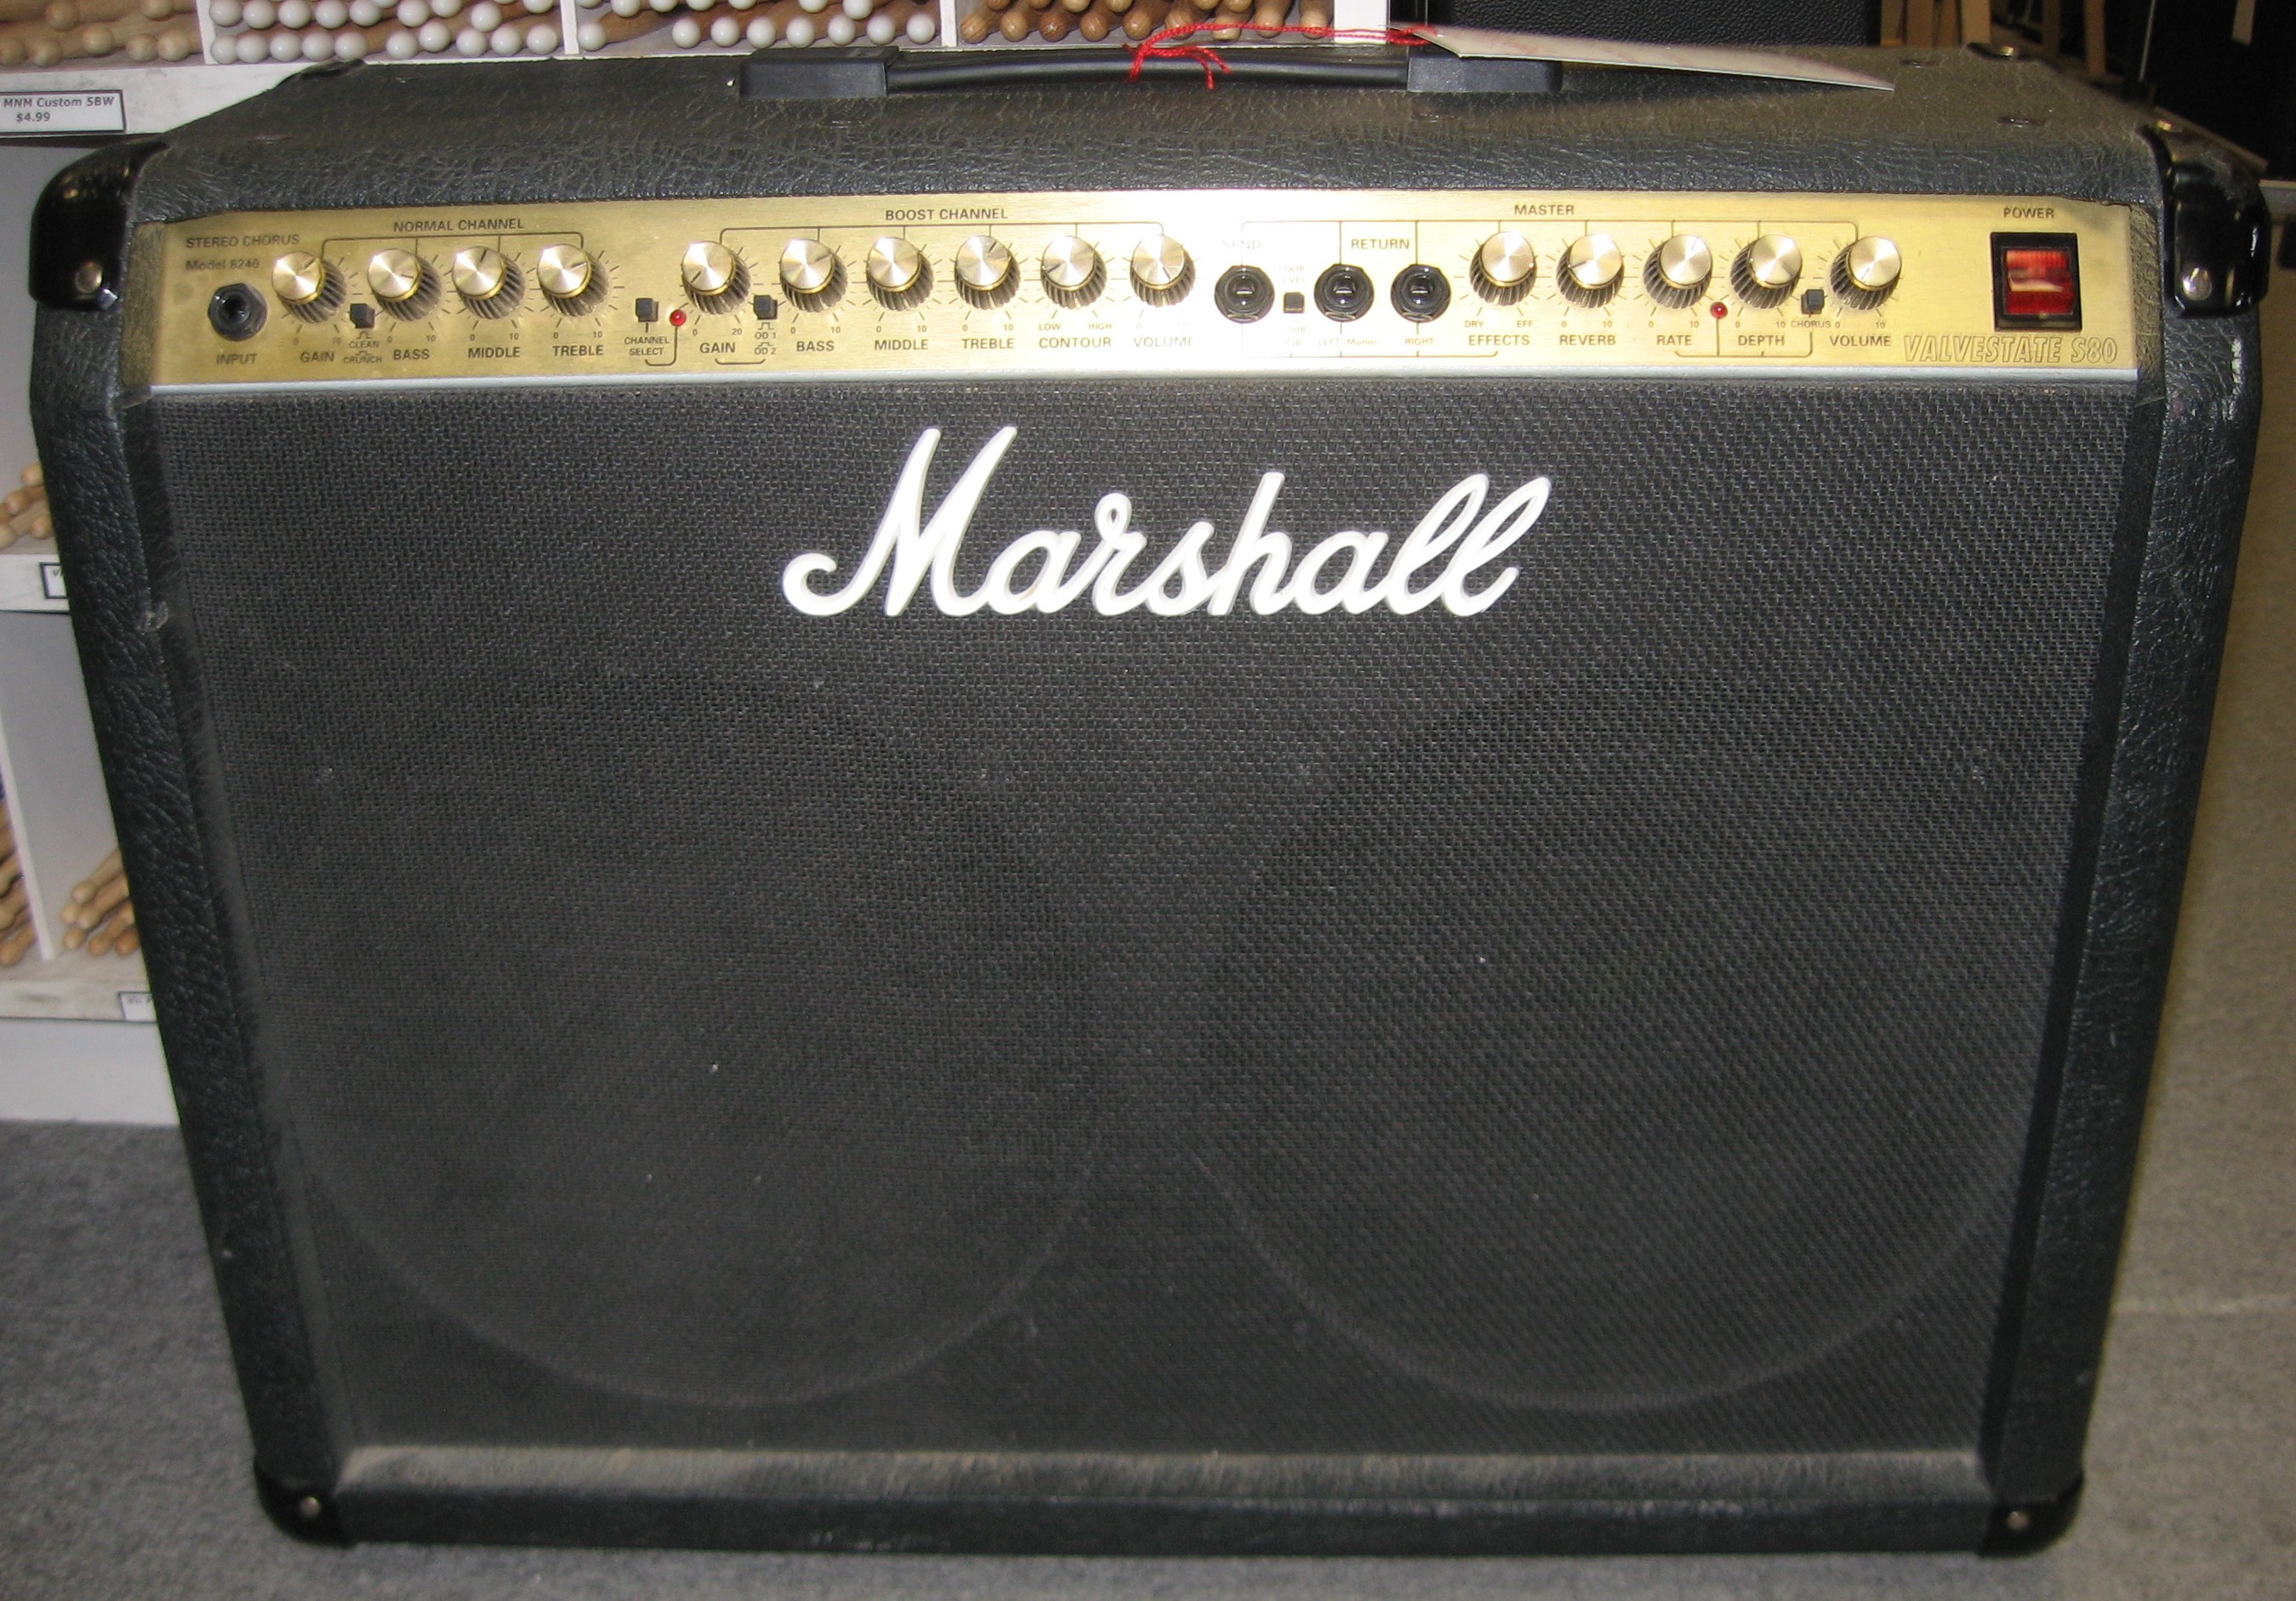 8240 ValveState S80 Stereo Chorus Marshall - Audiofanzine